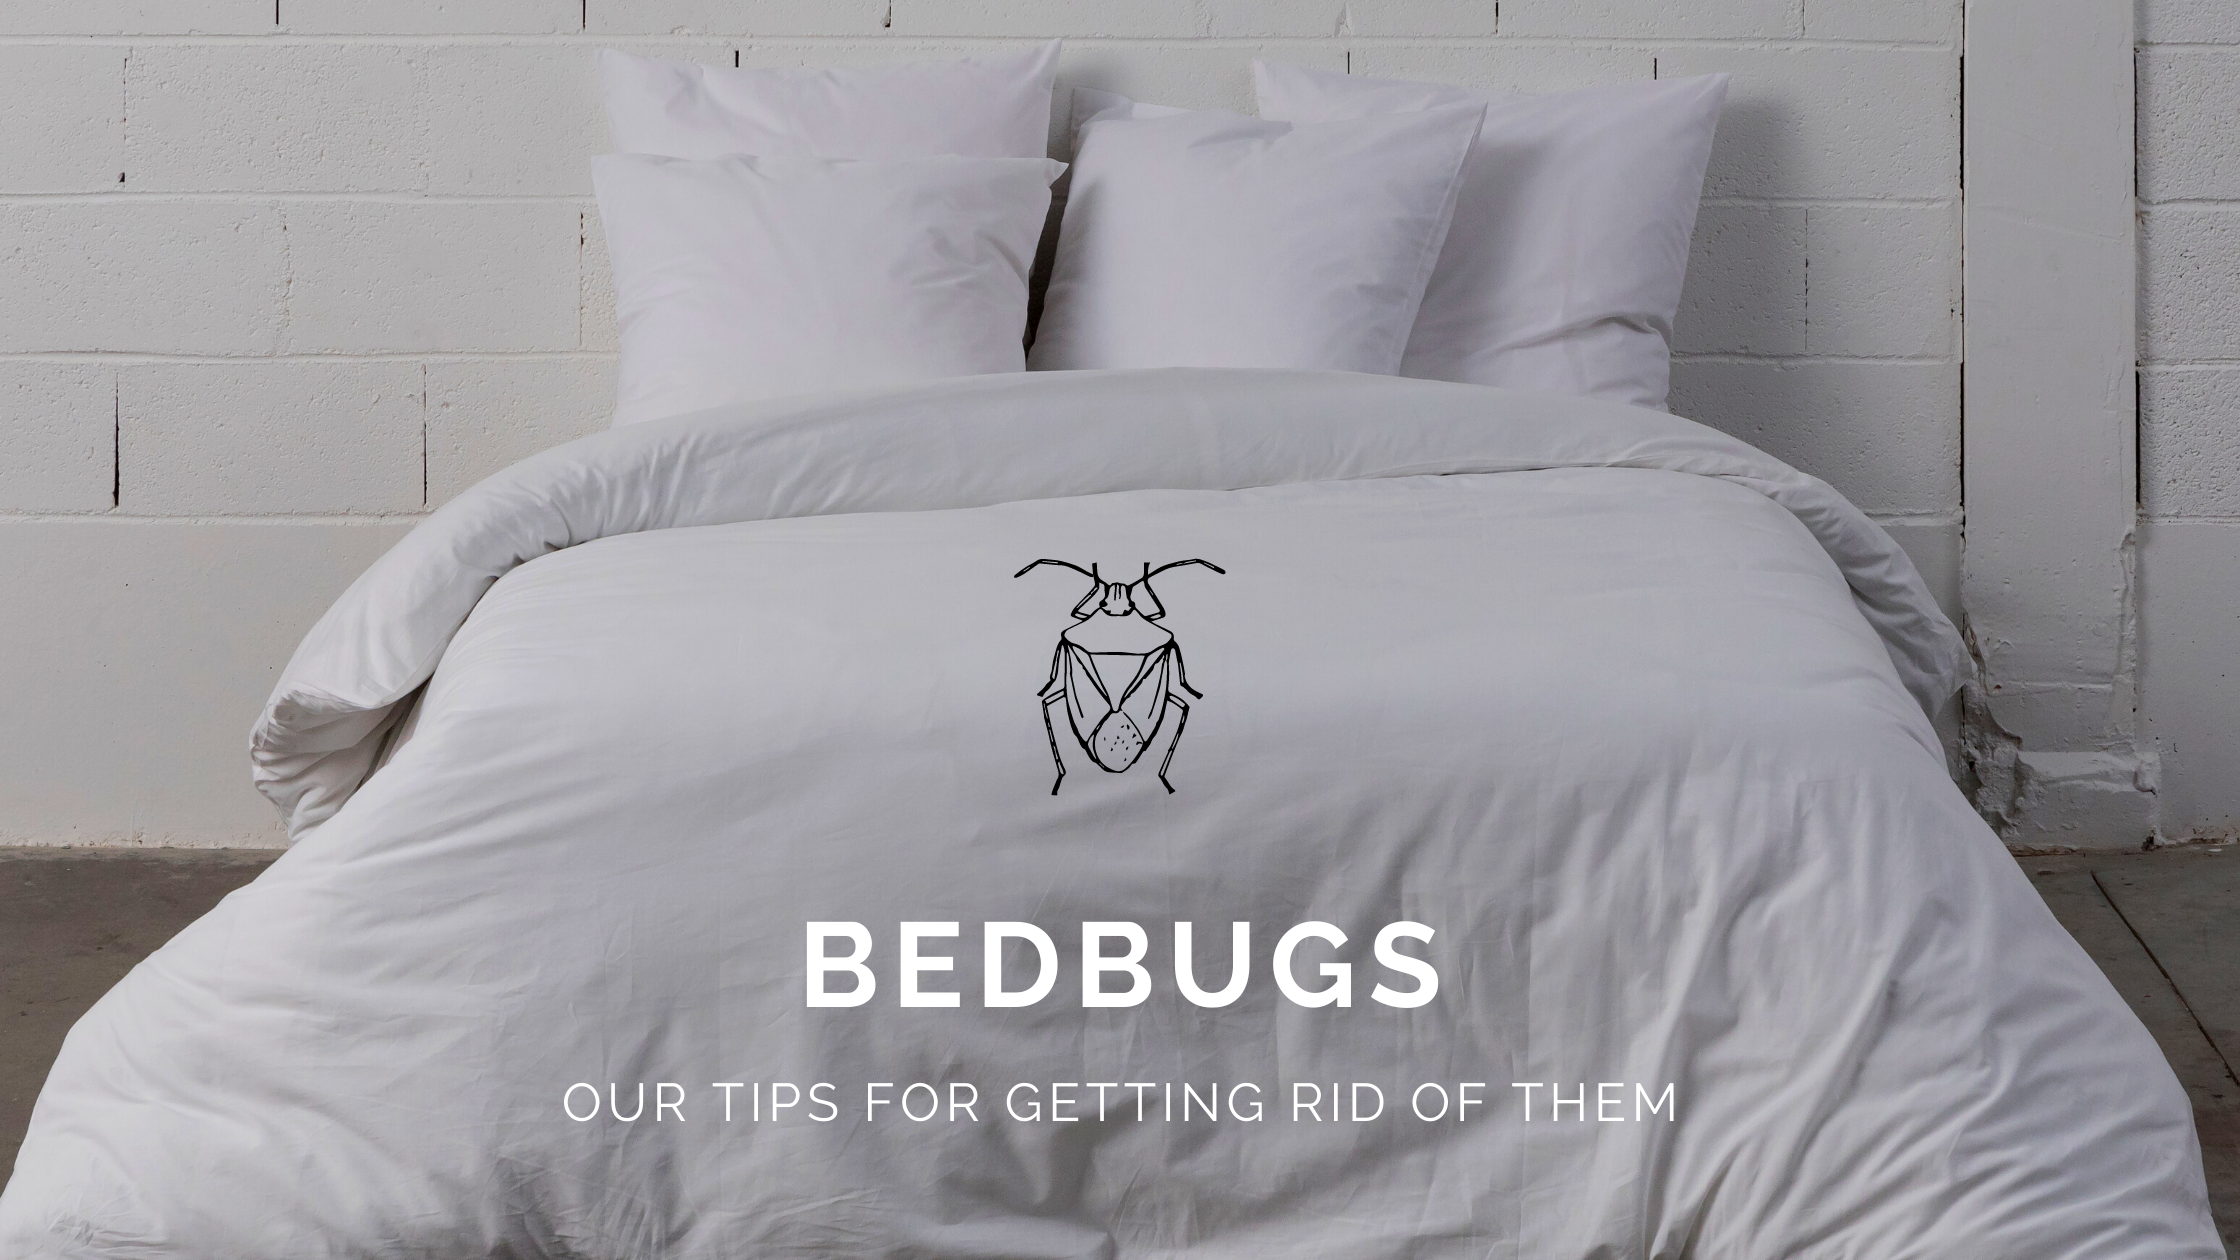 Our anti-bedbug tips